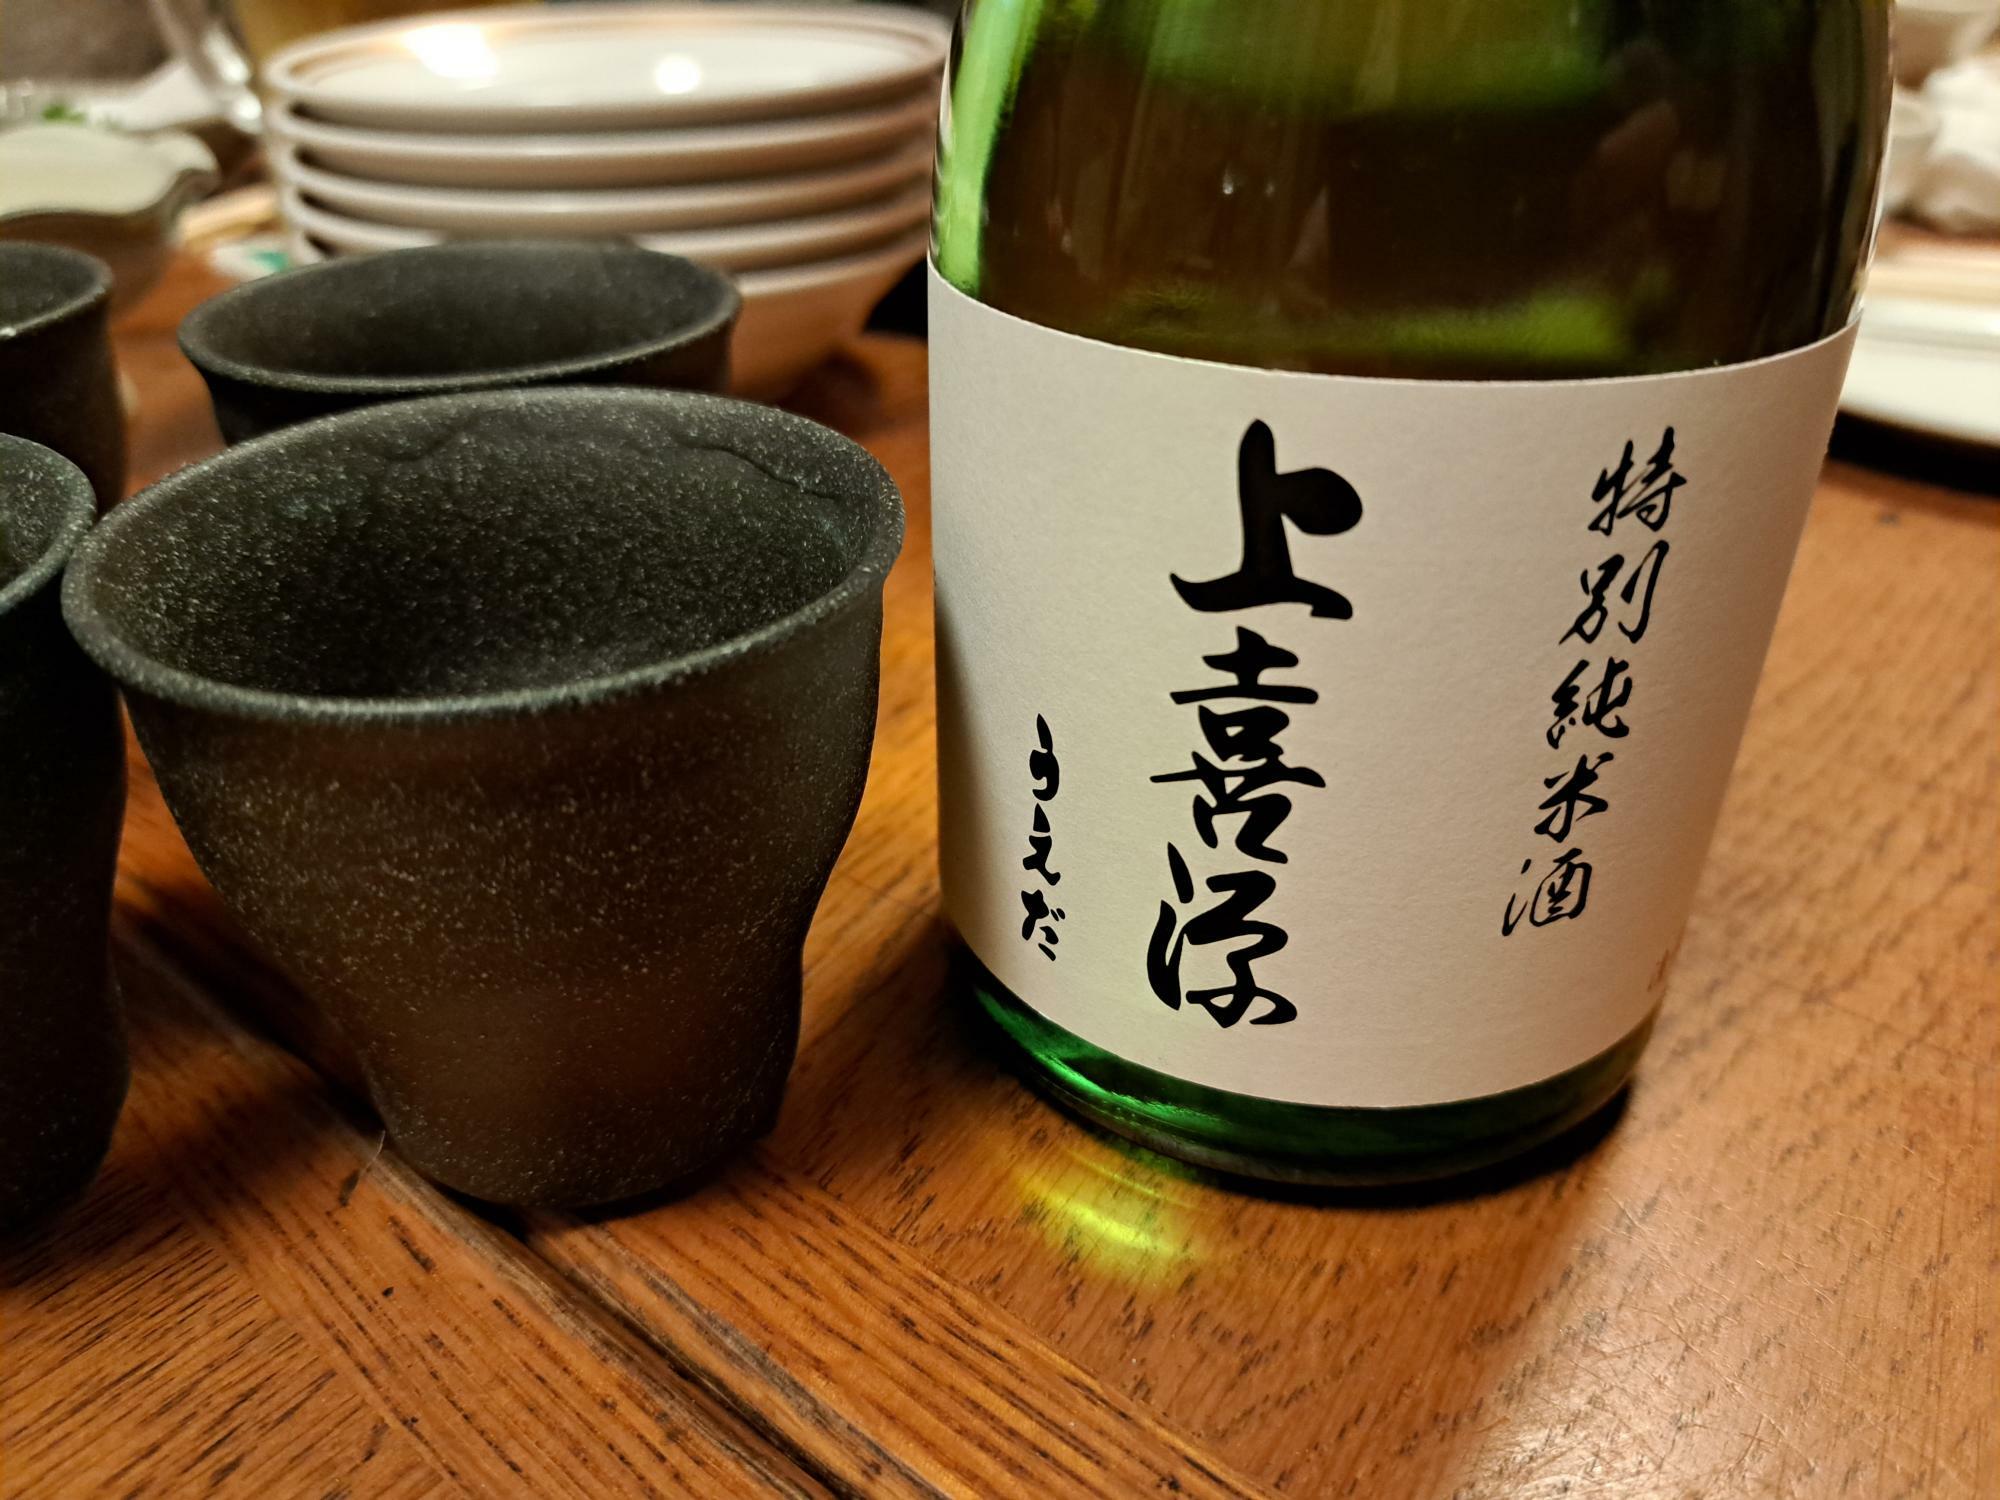 「上喜源」の日本酒。